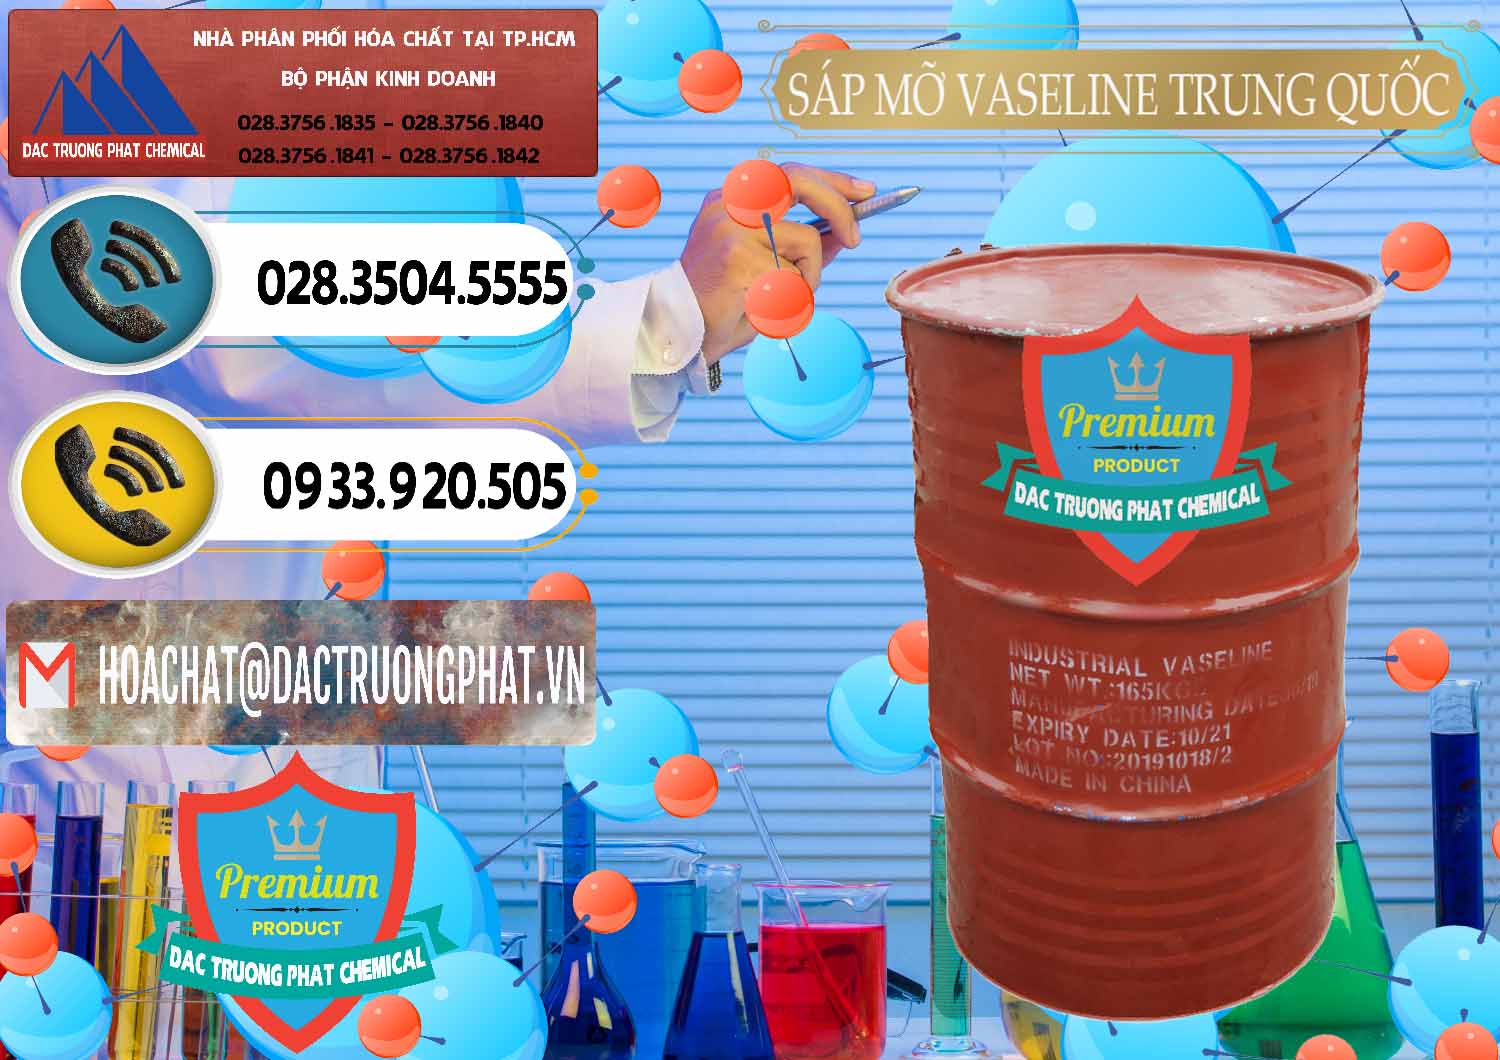 Nơi bán và phân phối Sáp Mỡ Vaseline Trung Quốc China - 0122 - Cty phân phối & cung cấp hóa chất tại TP.HCM - hoachatdetnhuom.vn